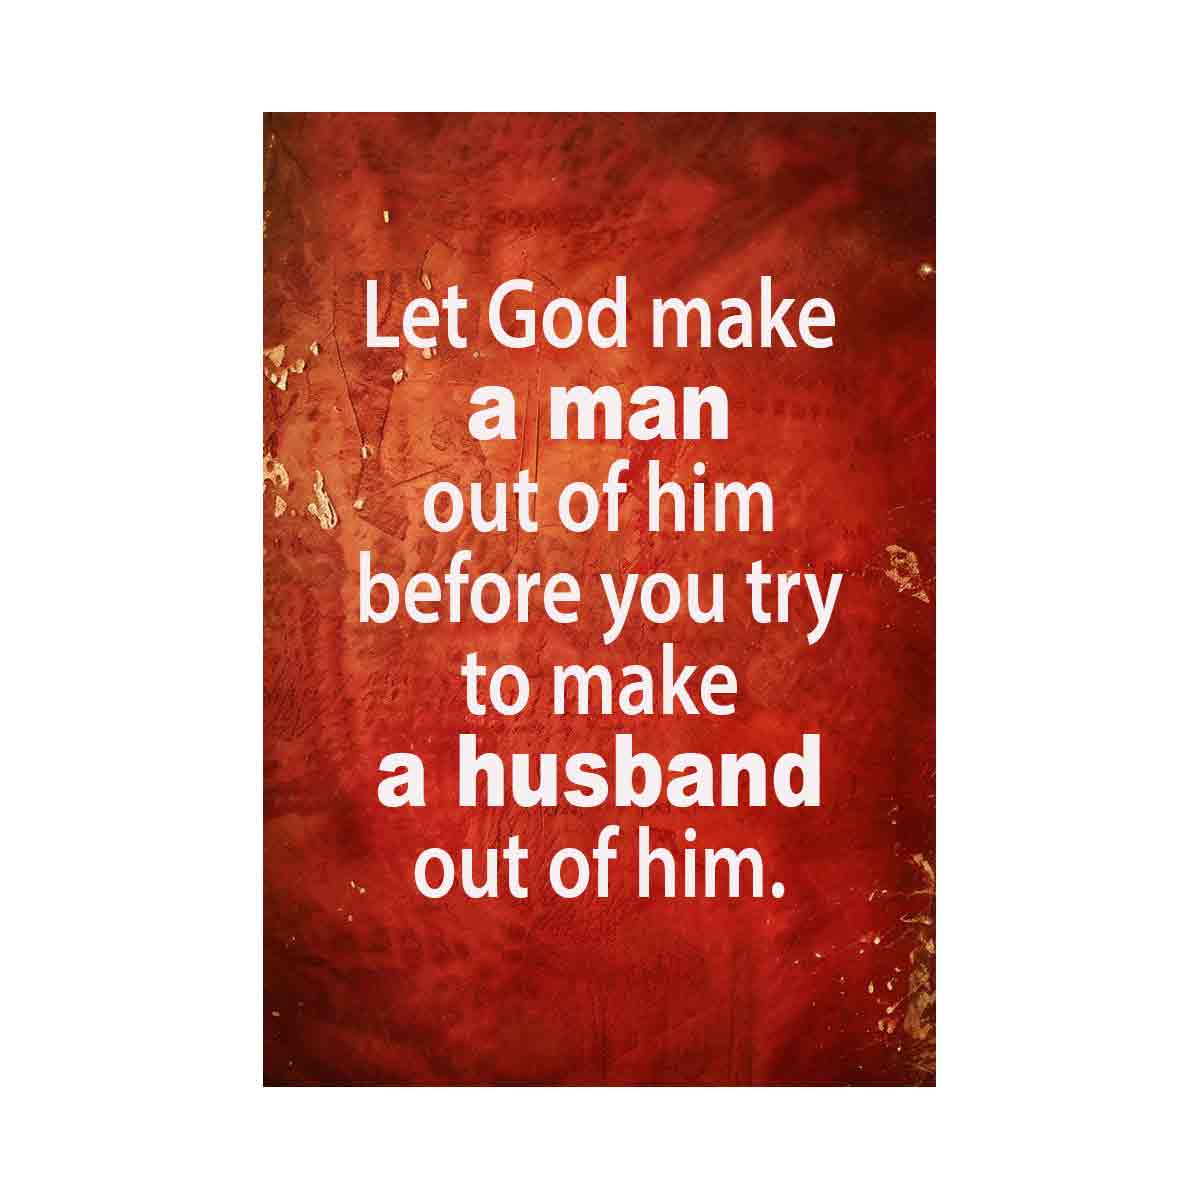 Let GOD make a man